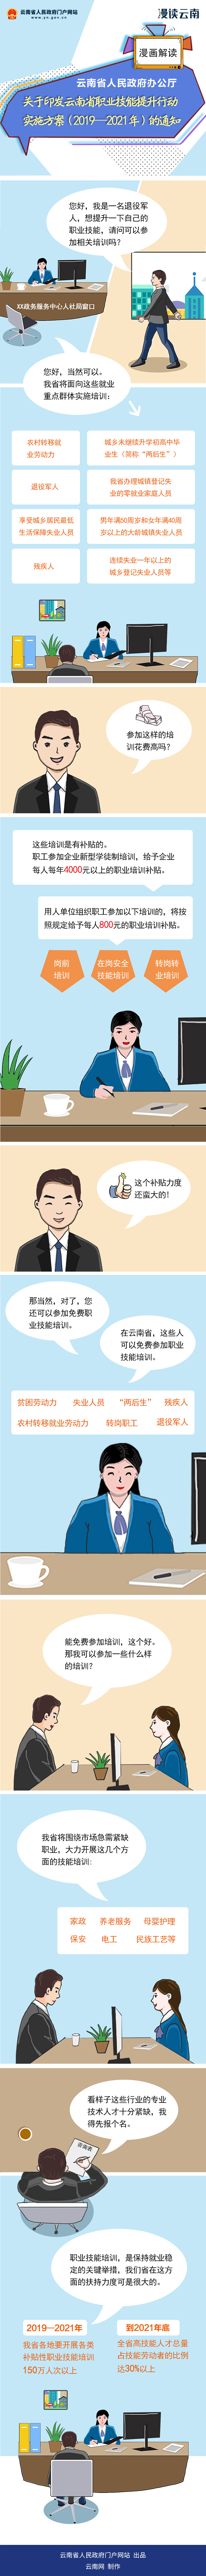 漫画解读《云南省职业技能提升行动实施方案（2019—2021年）》.png